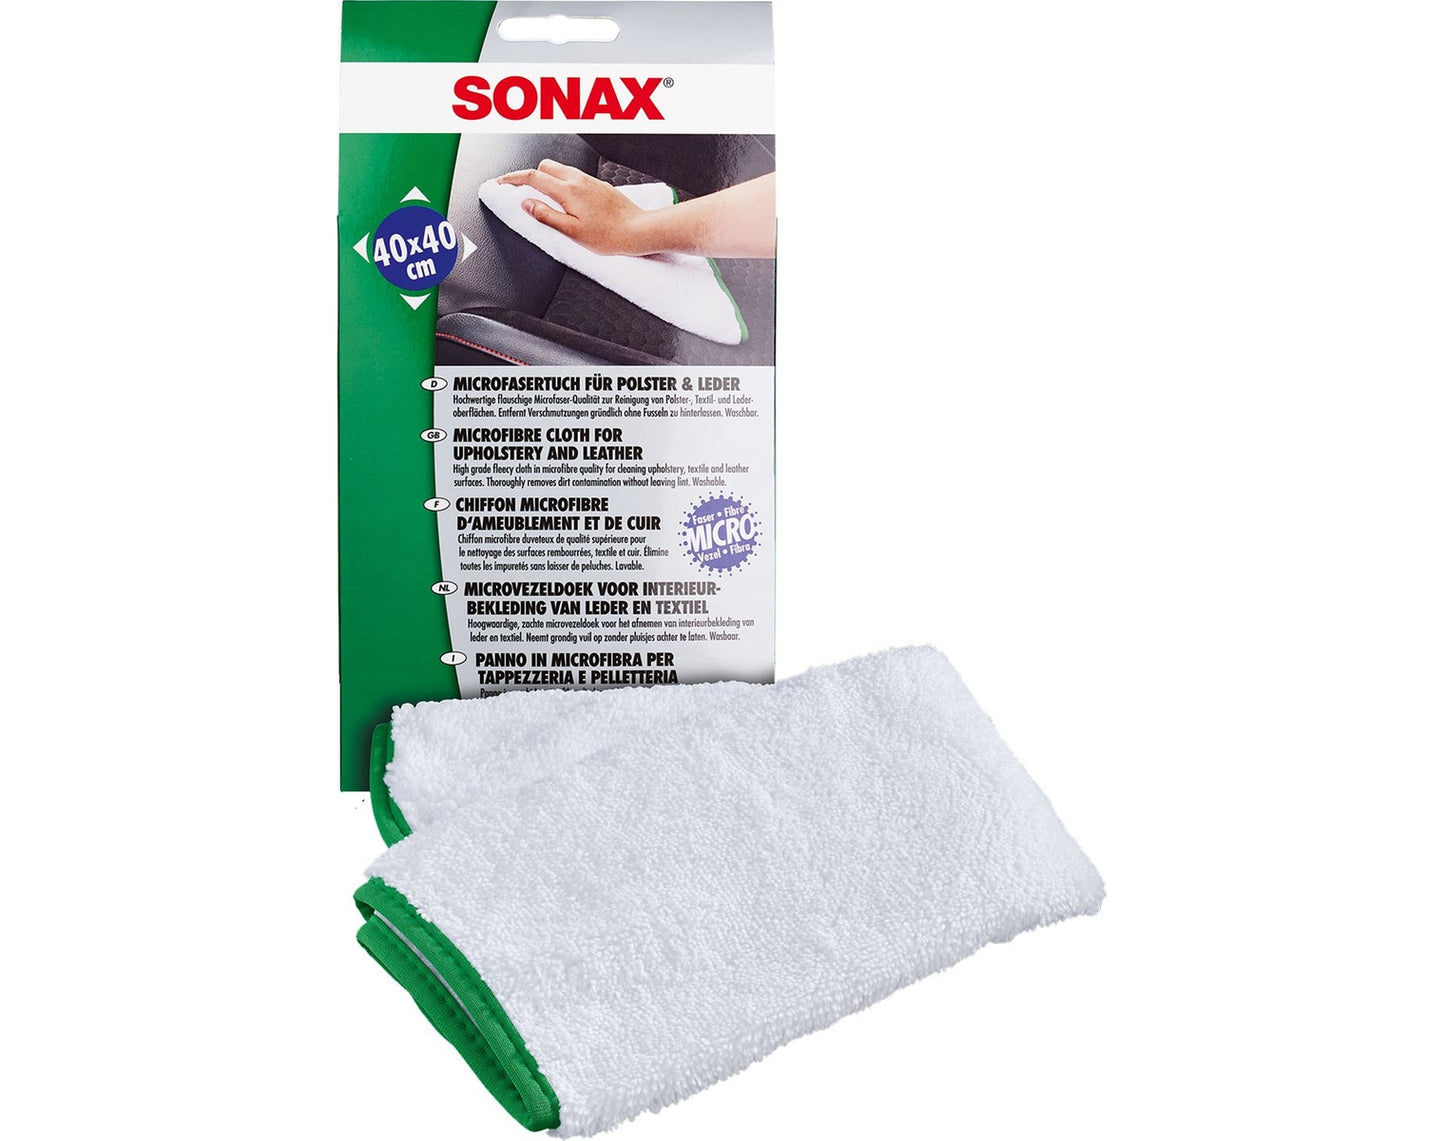 Sonax MicrofaserTuch für Polster + Leder, 40 x 40 cm